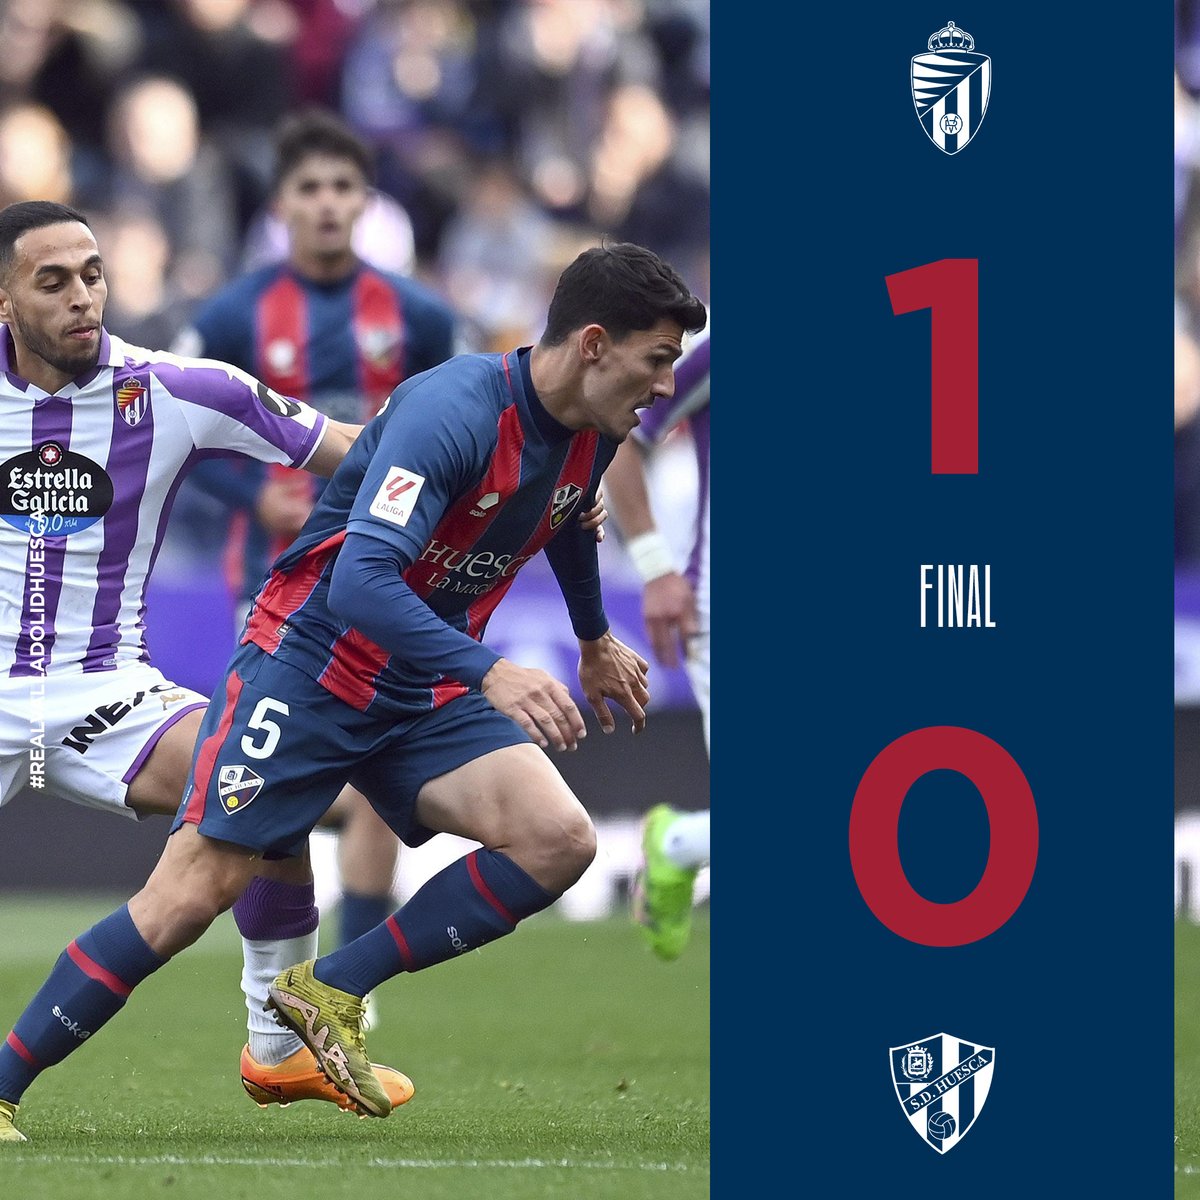 FINAL | Derrota en Valladolid. El equipo fue de menos a más en el partido y mejoró en la segunda mitad, pero no fue suficiente. ¡Hay que seguir remando! ¡Pensamos ya en el duelo en casa! 1-0 | #RealValladolidHuesca 🔵🔴